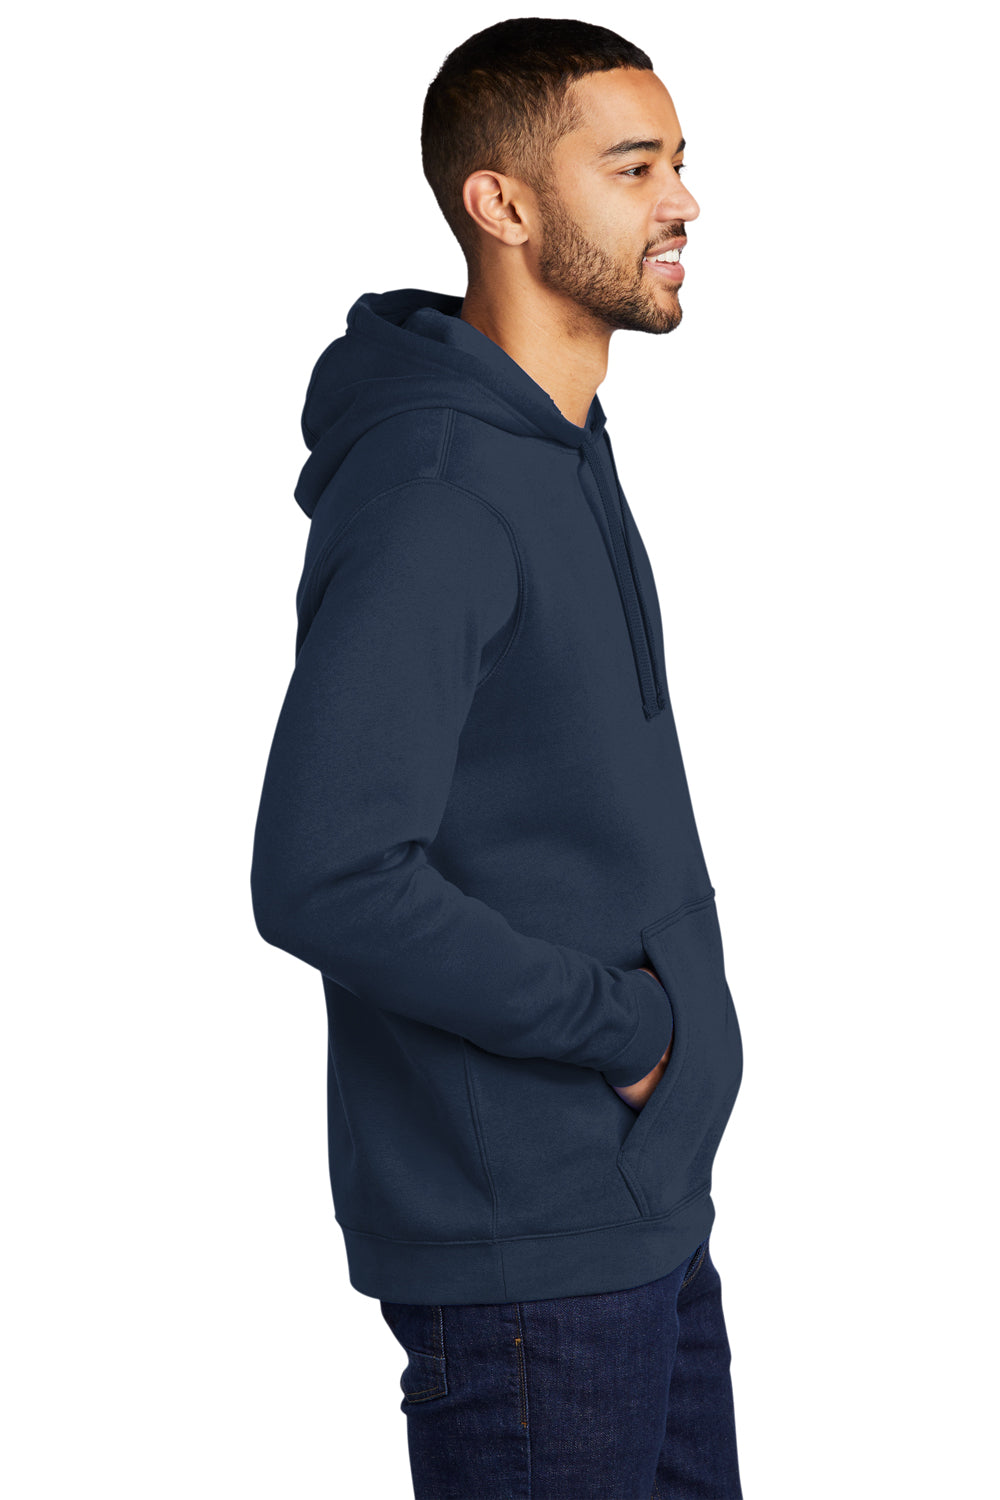 Nike CJ1611 Mens Club Fleece Hooded Sweatshirt Hoodie Navy Blue Model Side